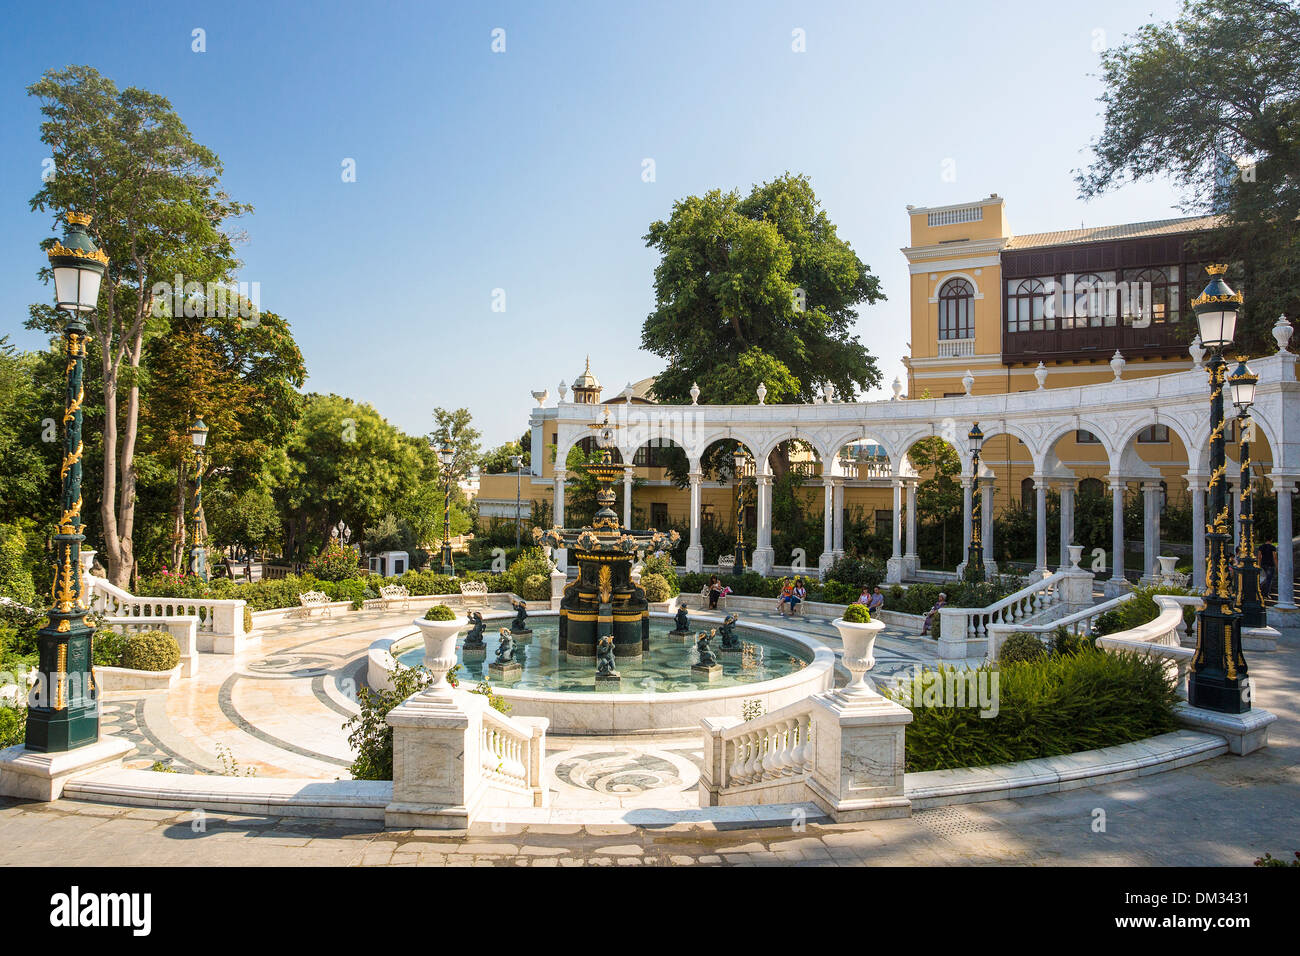 Caucase Azerbaïdjan Bakou Eurasia City building architecture centre-ville jardin fontaine Philharmonique music new park public Banque D'Images